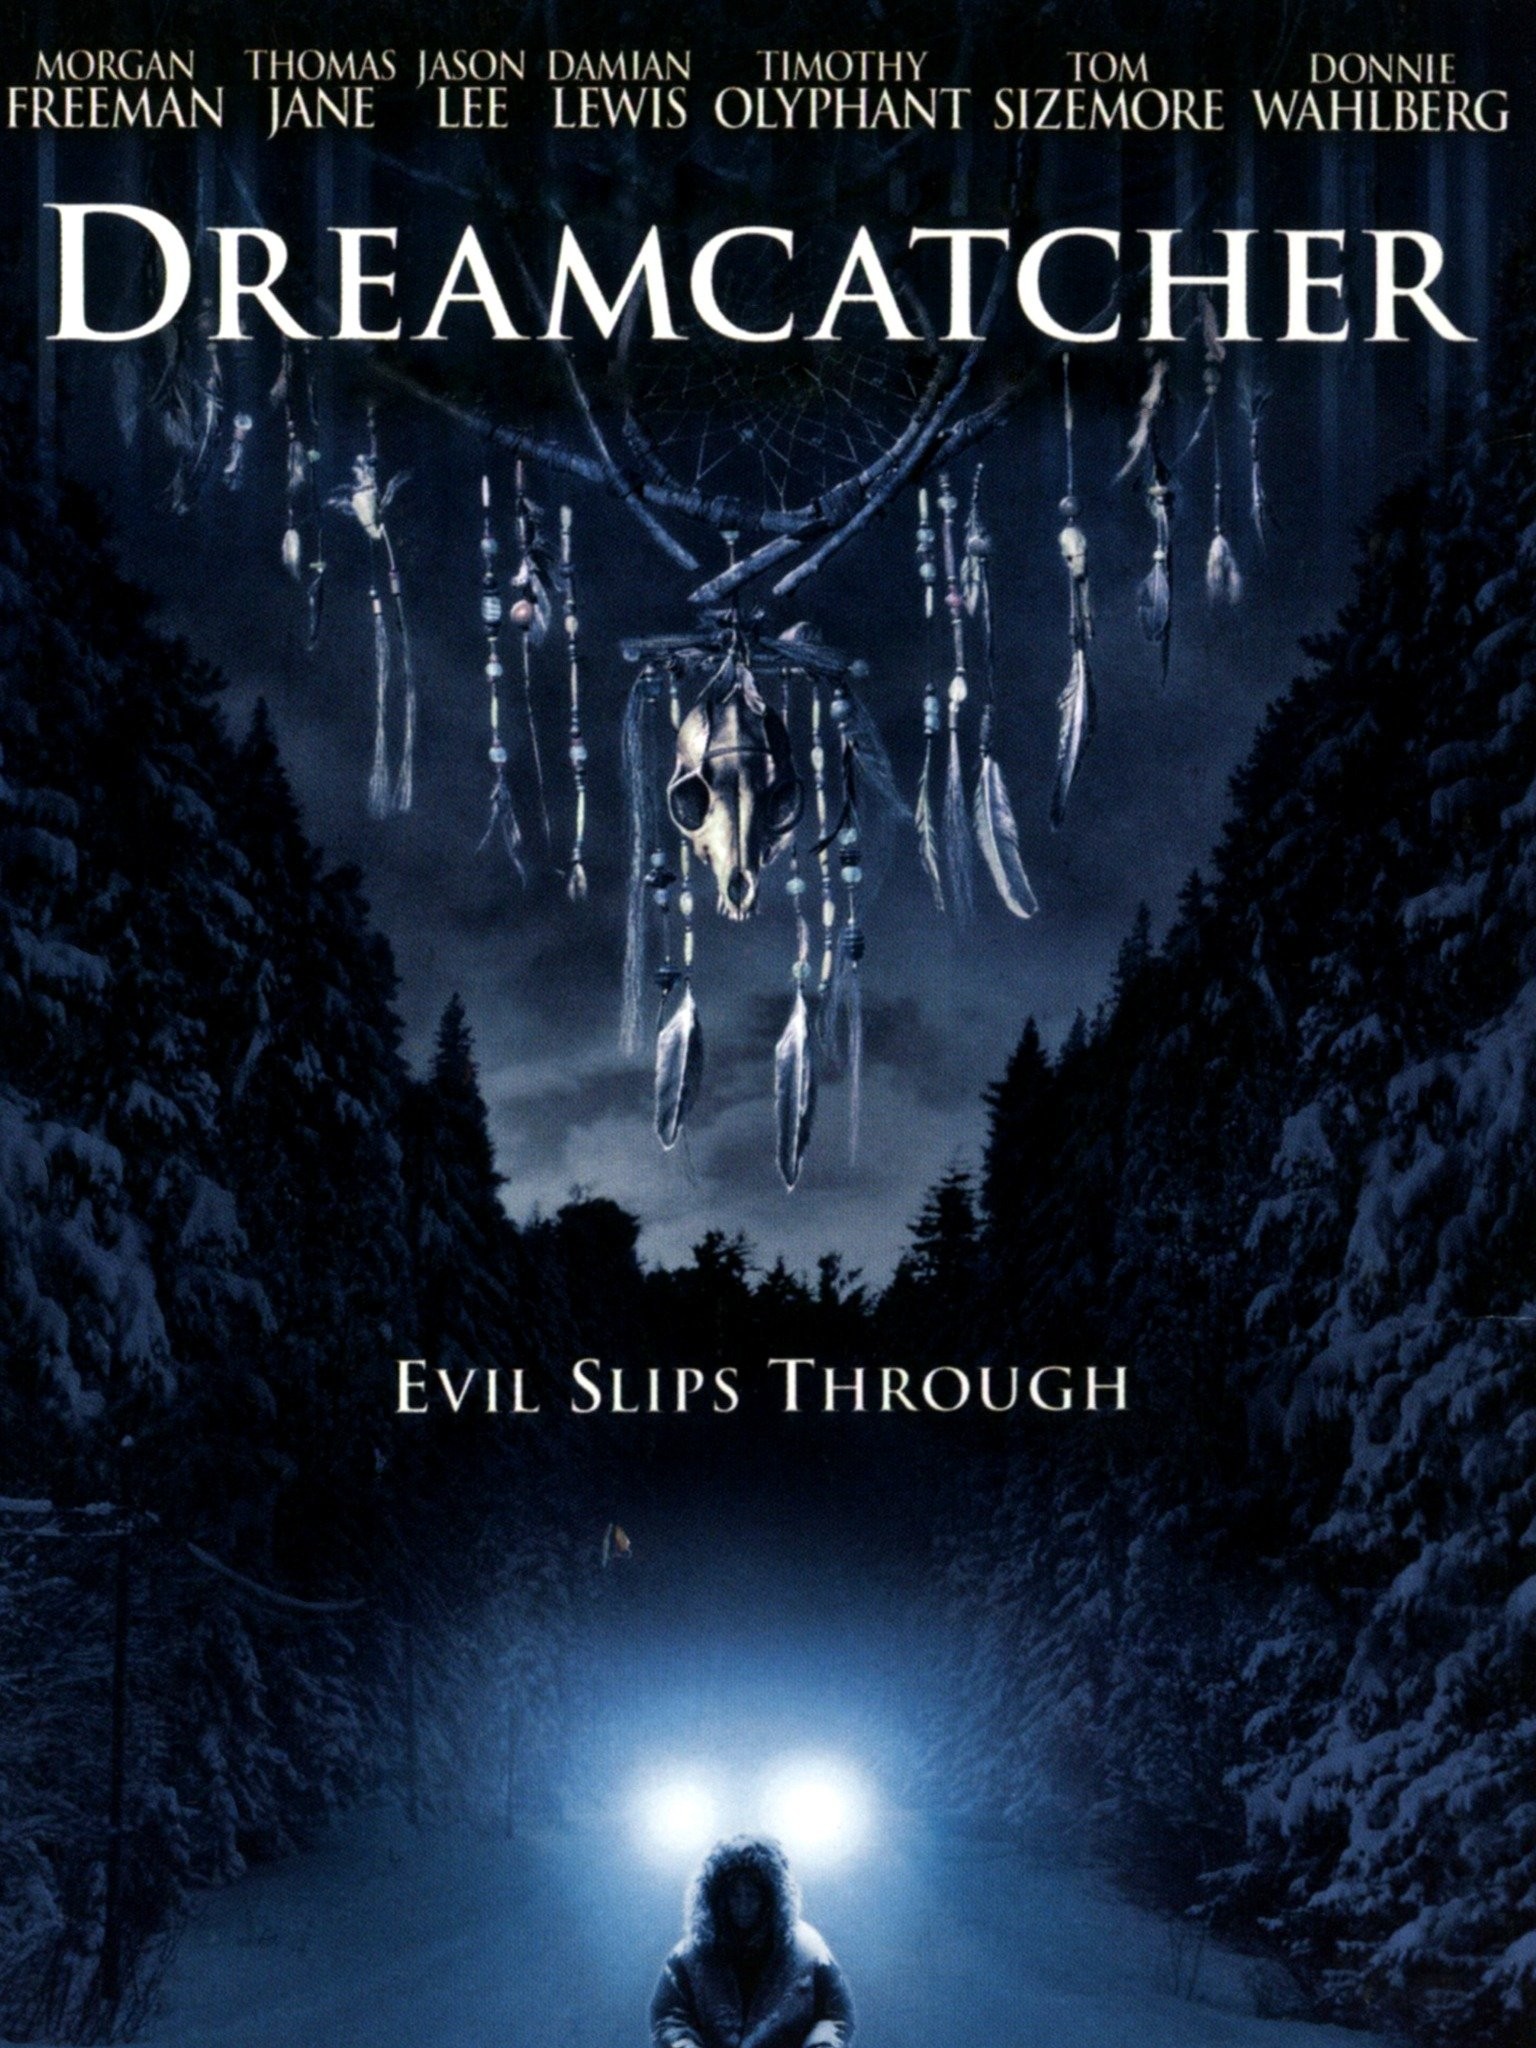 Watch Dreamcatcher (2021) Full Movie Free Online - Plex